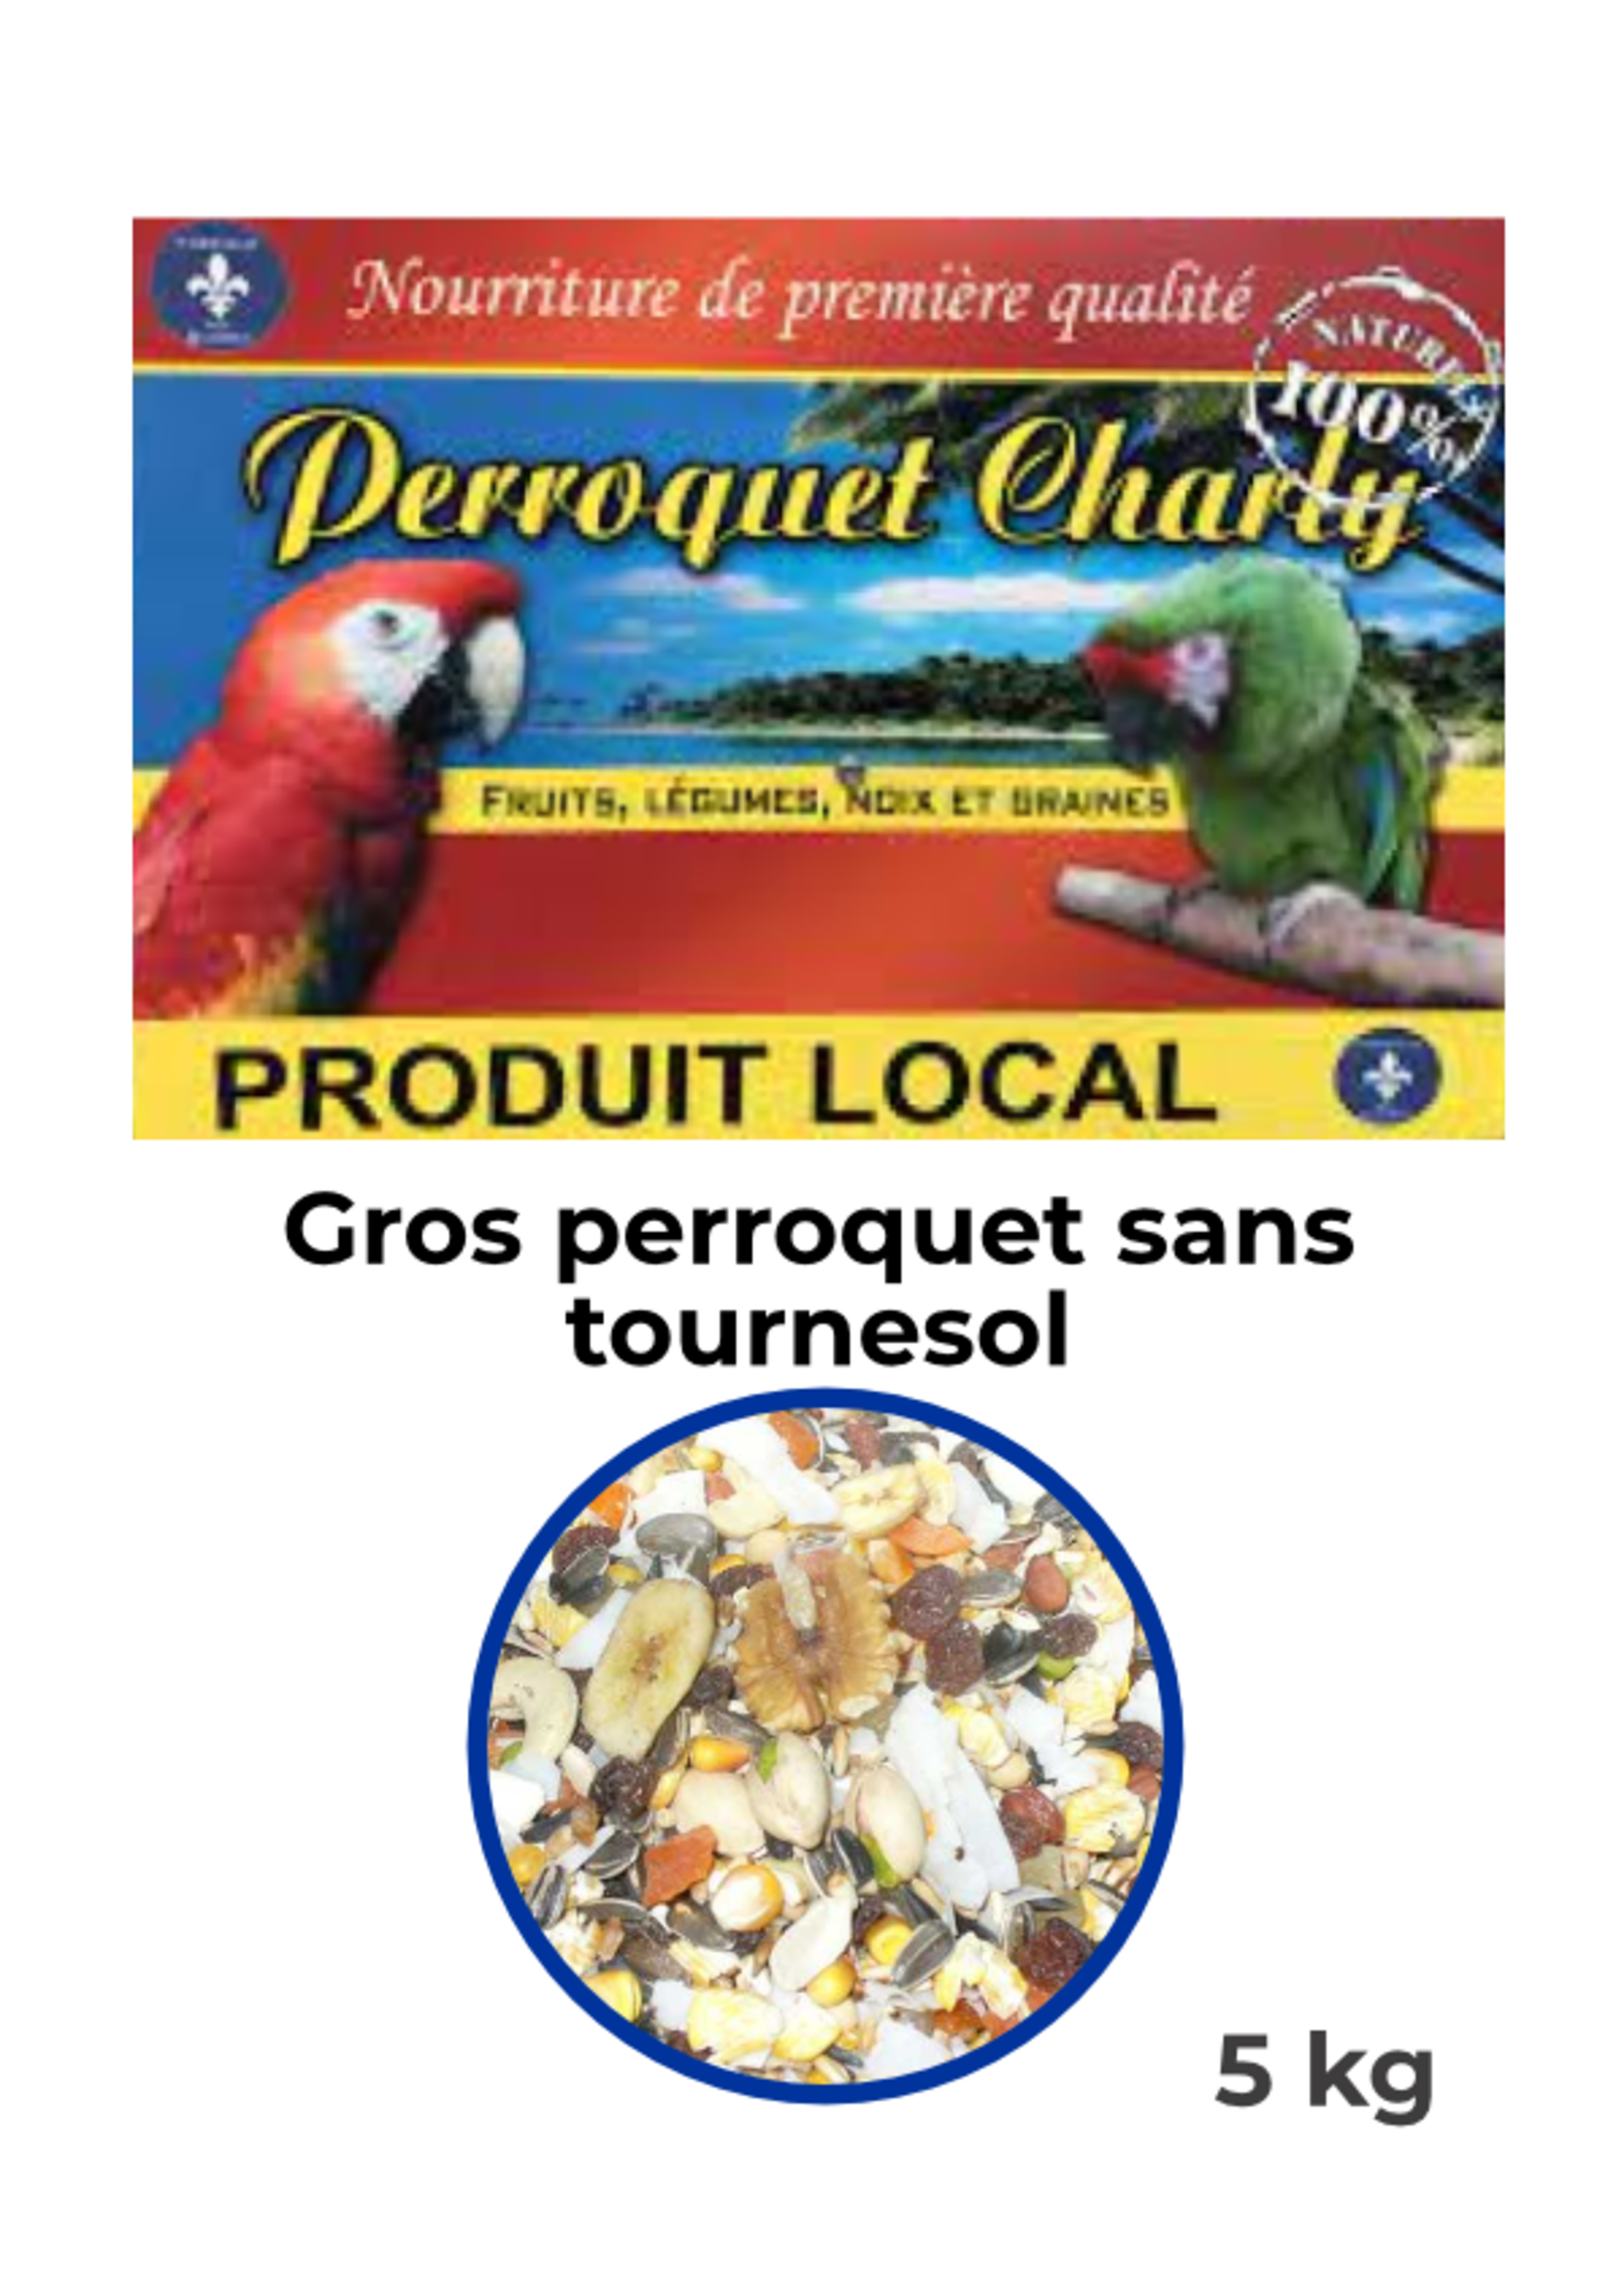 Perroquet Charly PC Nourriture complete fruit & noix gros perroquet sans tournesol, 5 kg